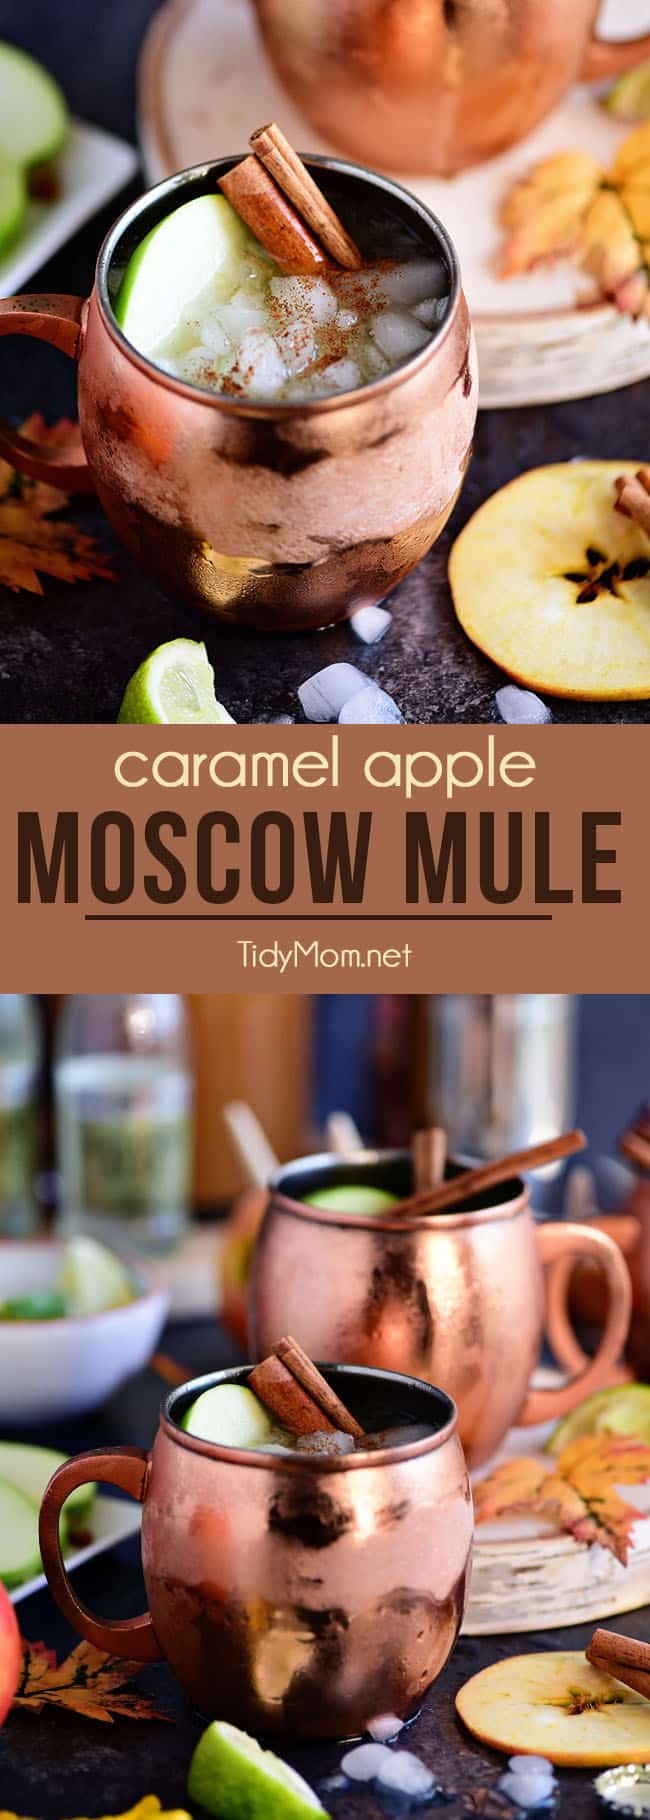 un catâr de mere caramel din Moscova este perfect pentru toamnă! Făcut cu vodcă dulce de caramel, cidru de mere proaspăt și bere de ghimbir, este sigur că va deveni un cocktail preferat de toamnă! Obțineți rețeta la TidyMom.net